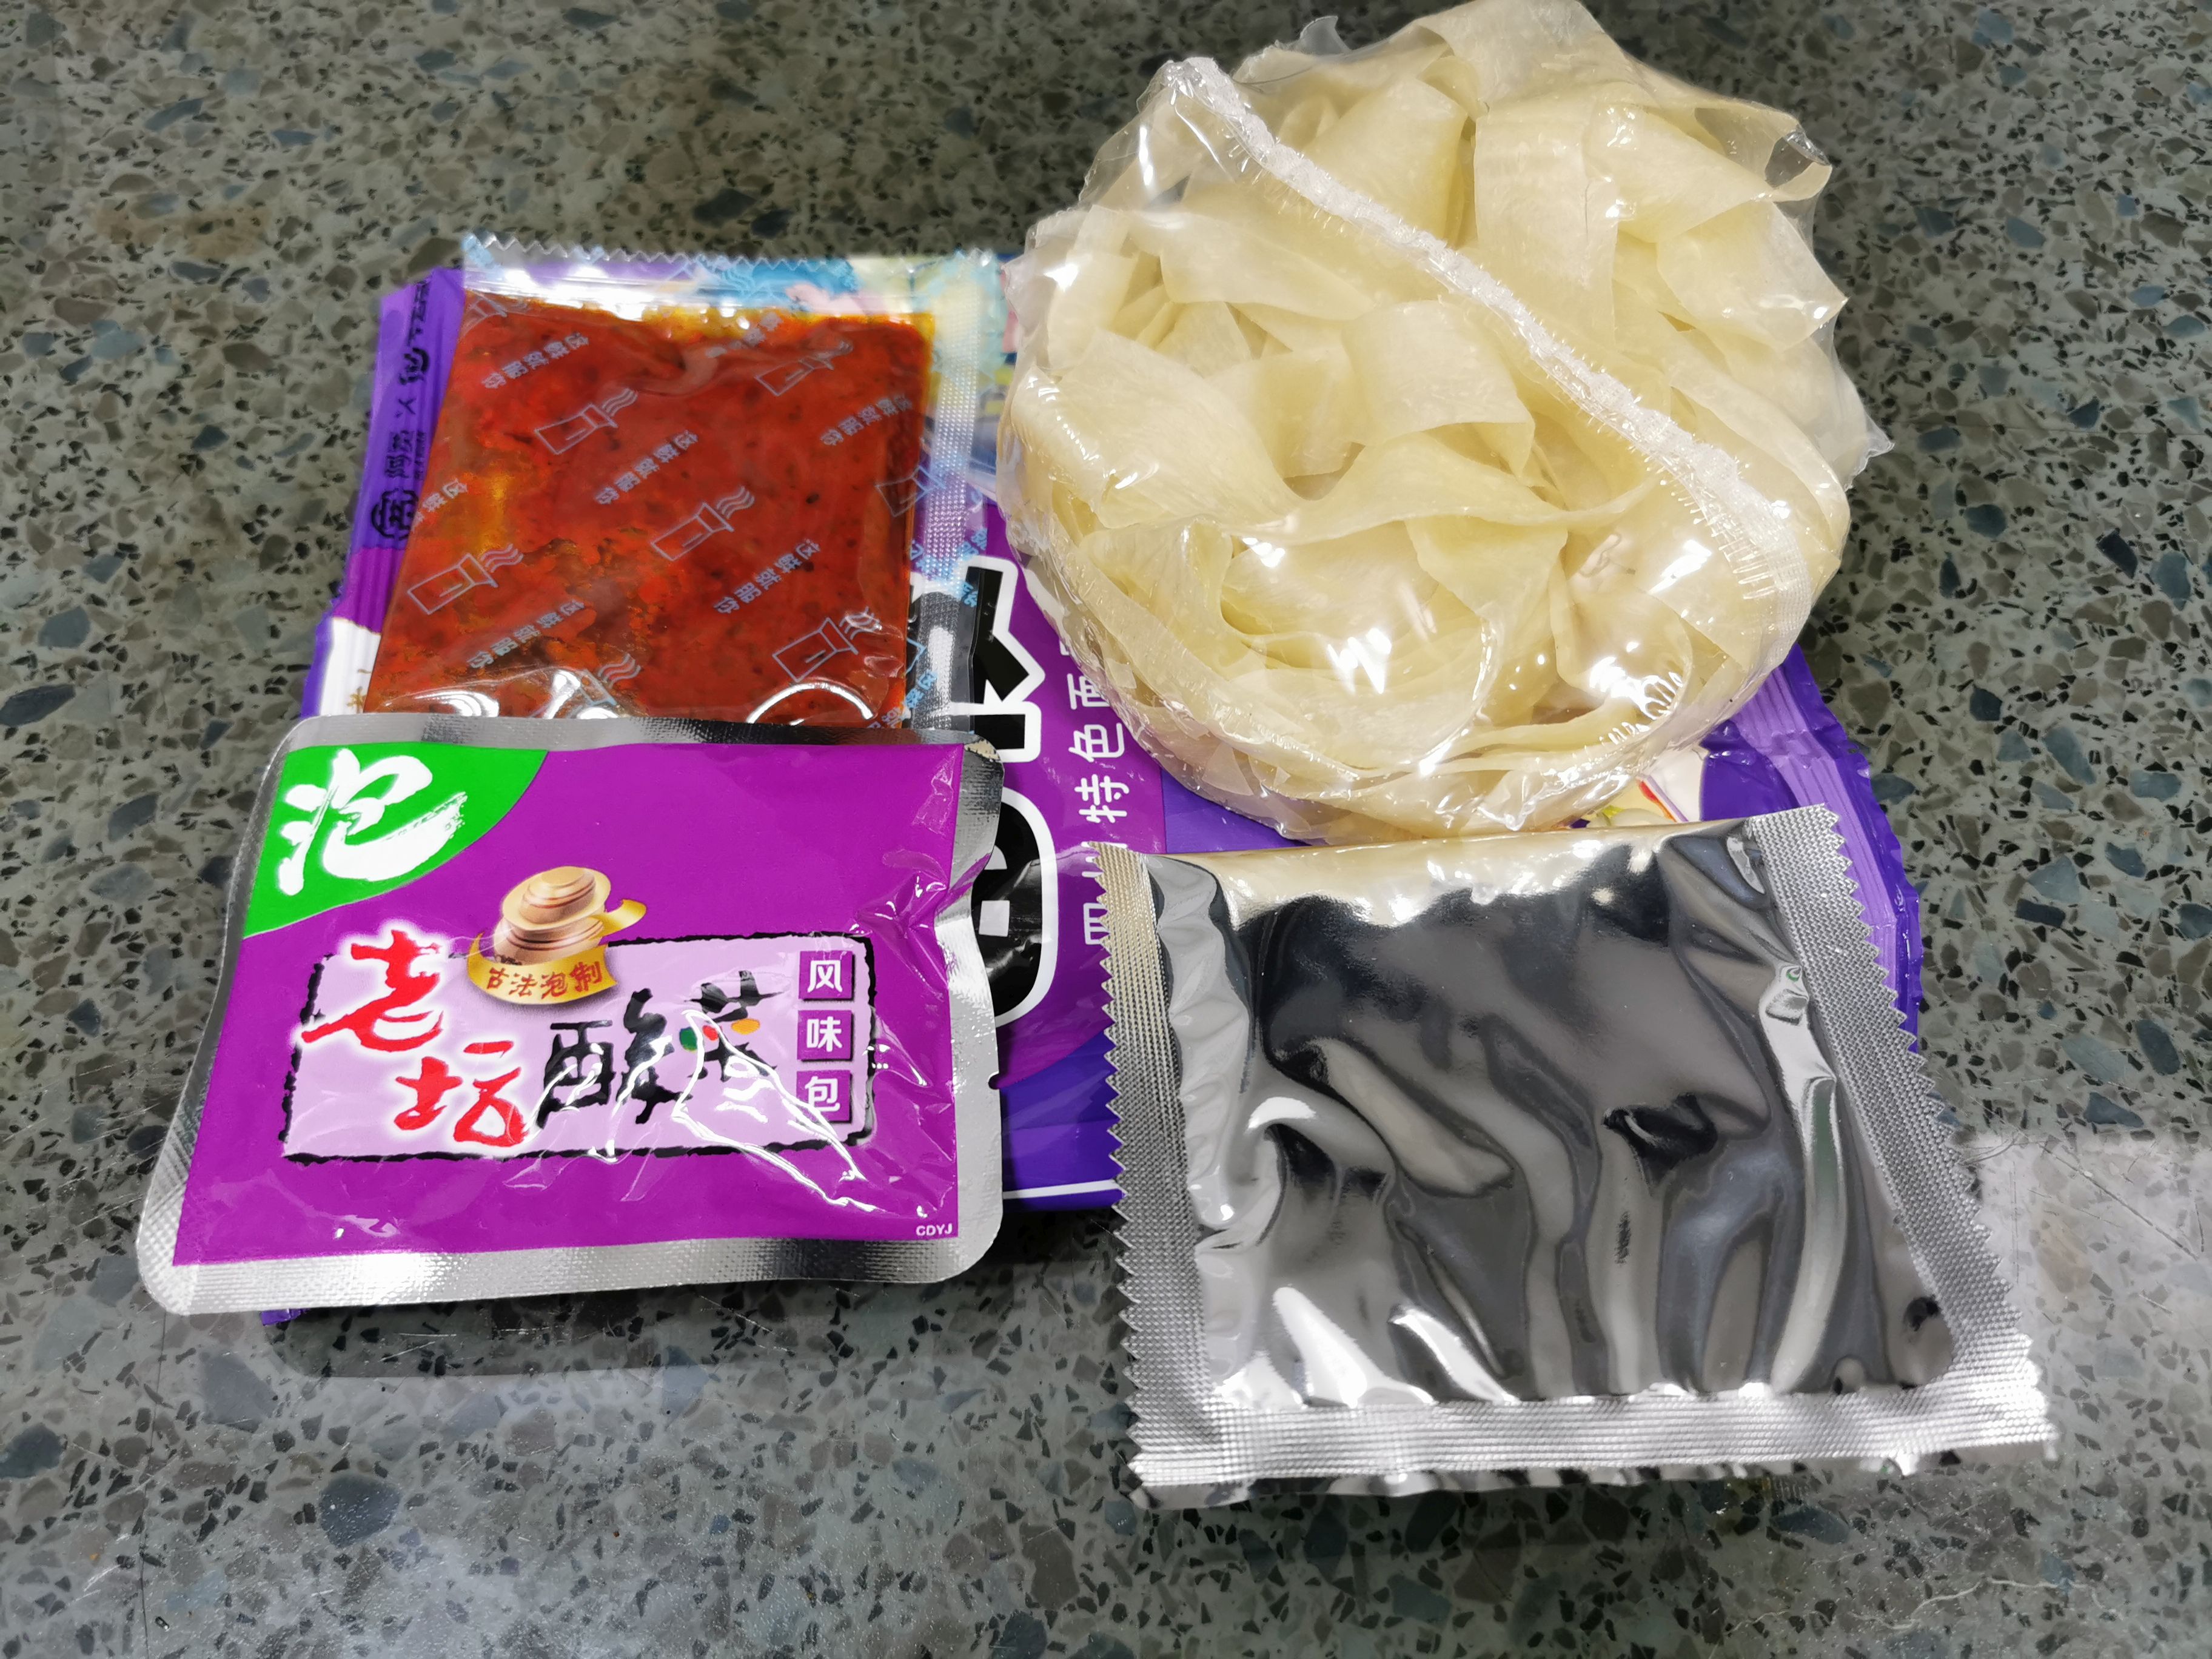 #2415: Baijia "Akuan Broad Noodle Sauerkraut"